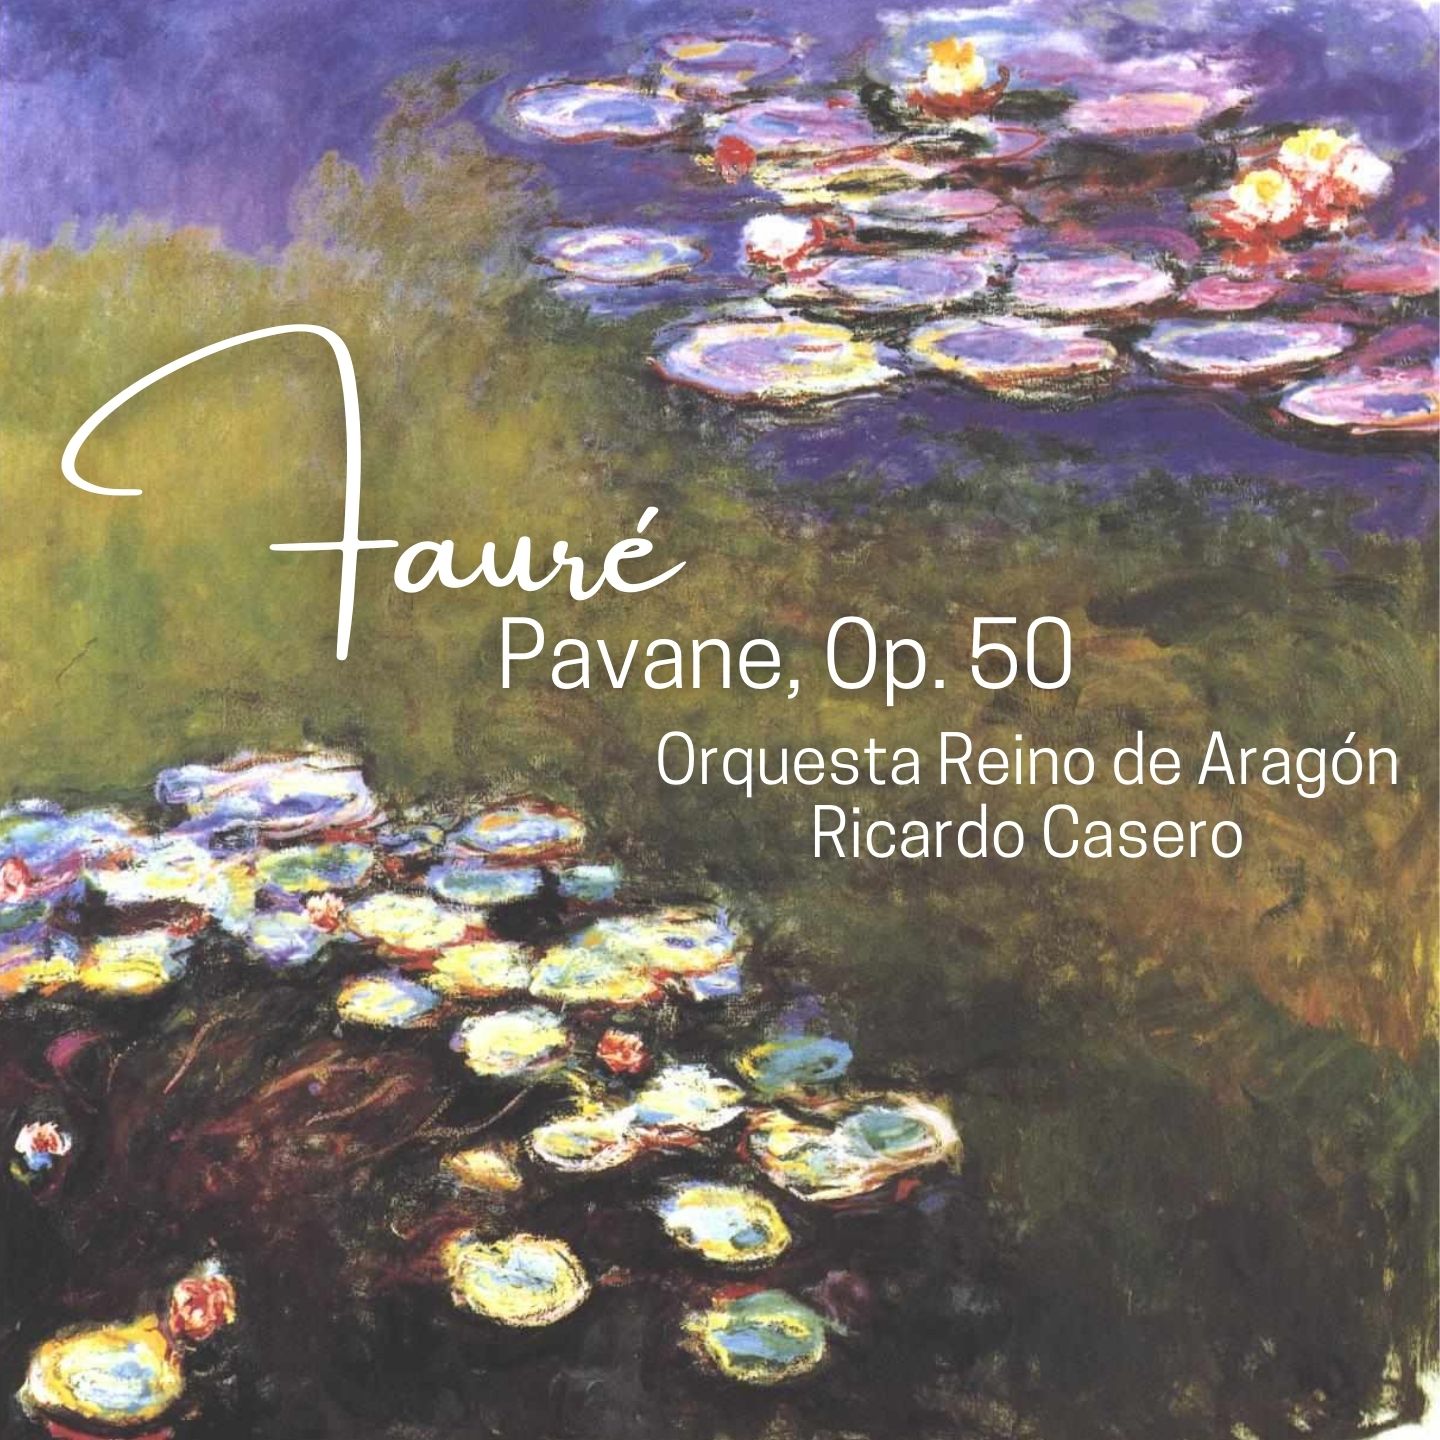 Pavane, Op. 50